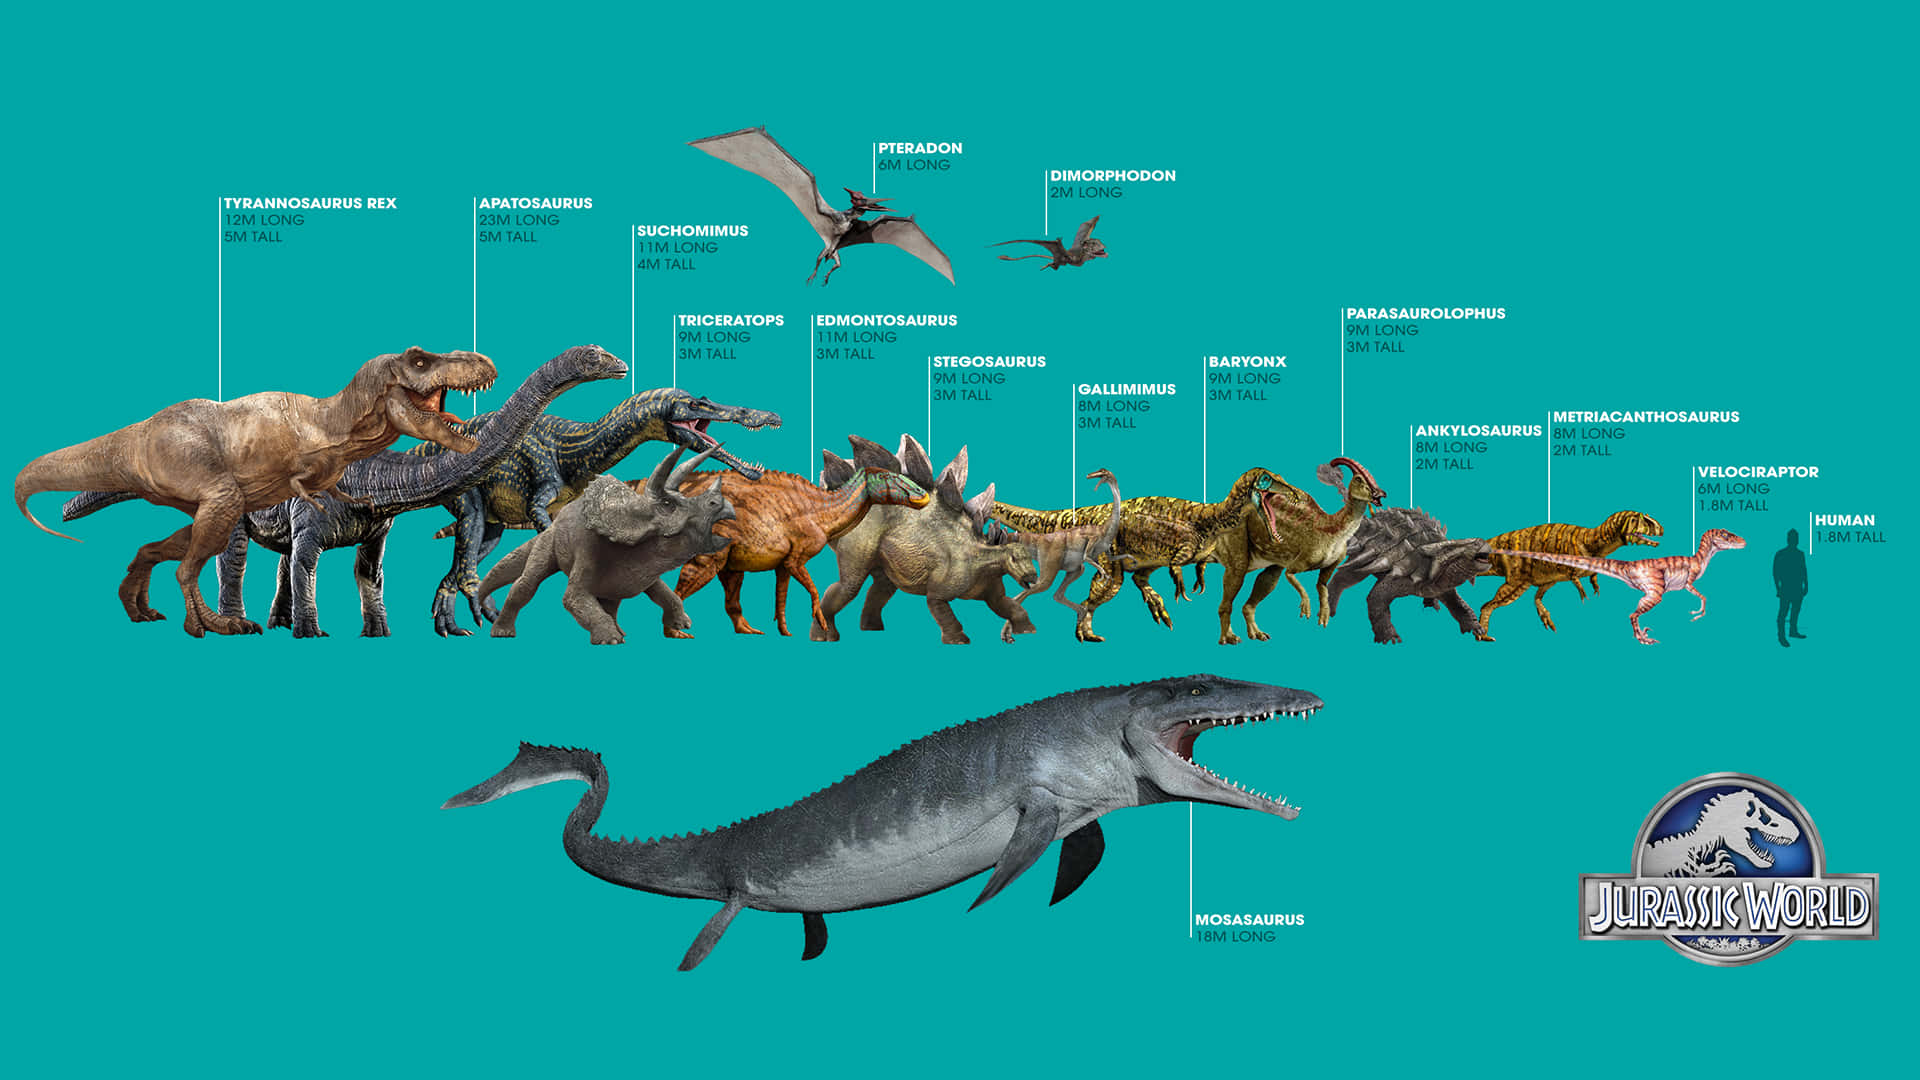 Jurassicworld: Dinosaurios - La Evolución De Los Dinosaurios